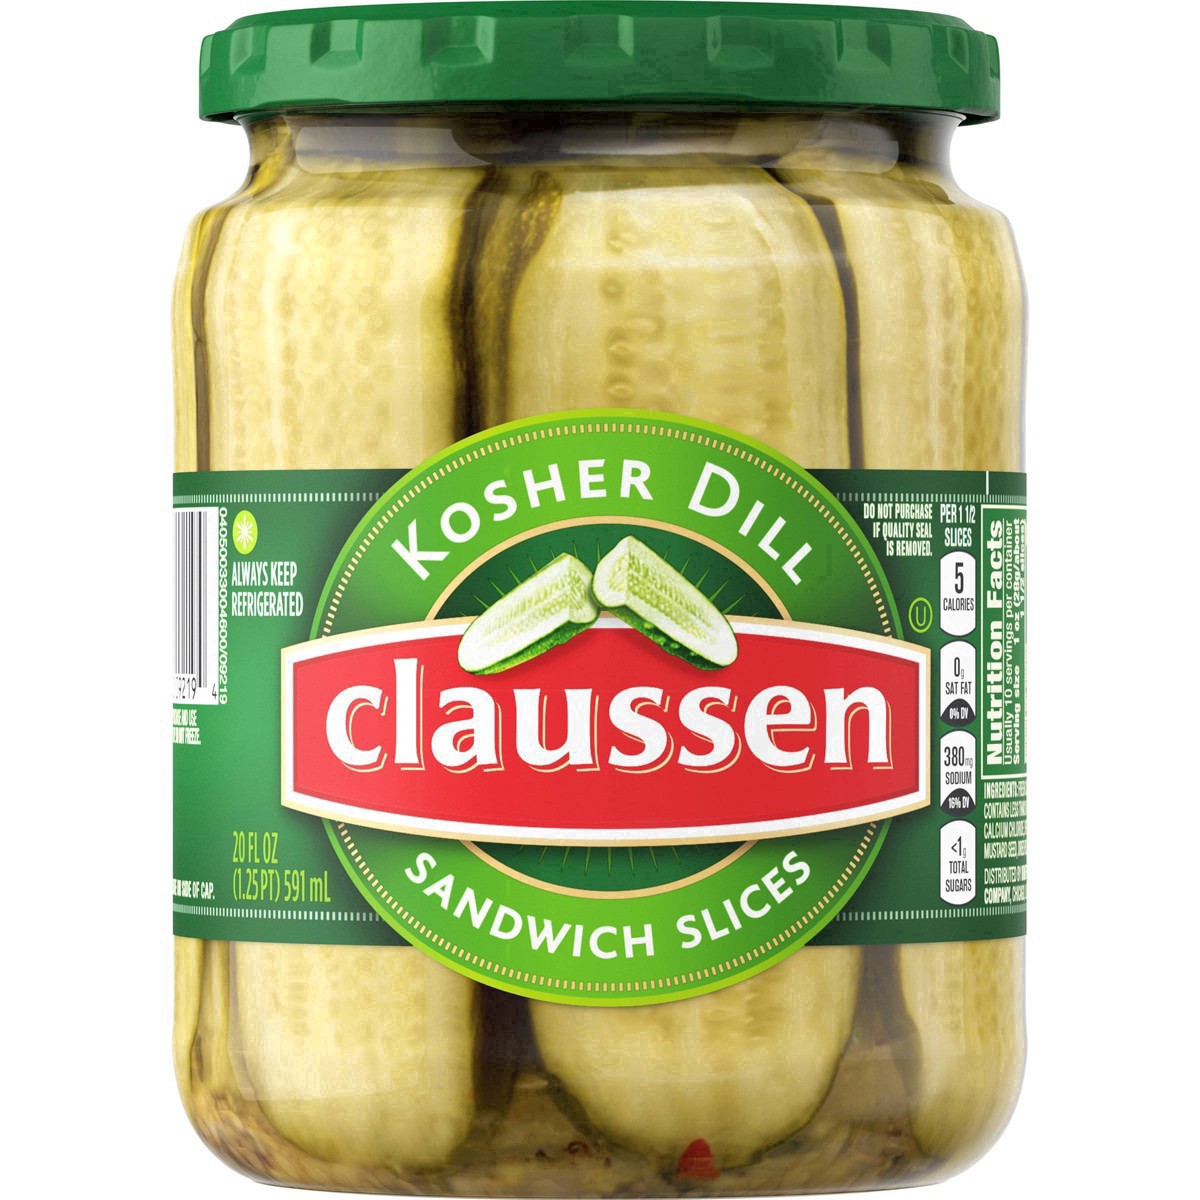 slide 11 of 144, Claussen Kosher Dill Pickle Sandwich Slices, 20 fl. oz. Jar, 20 fl oz